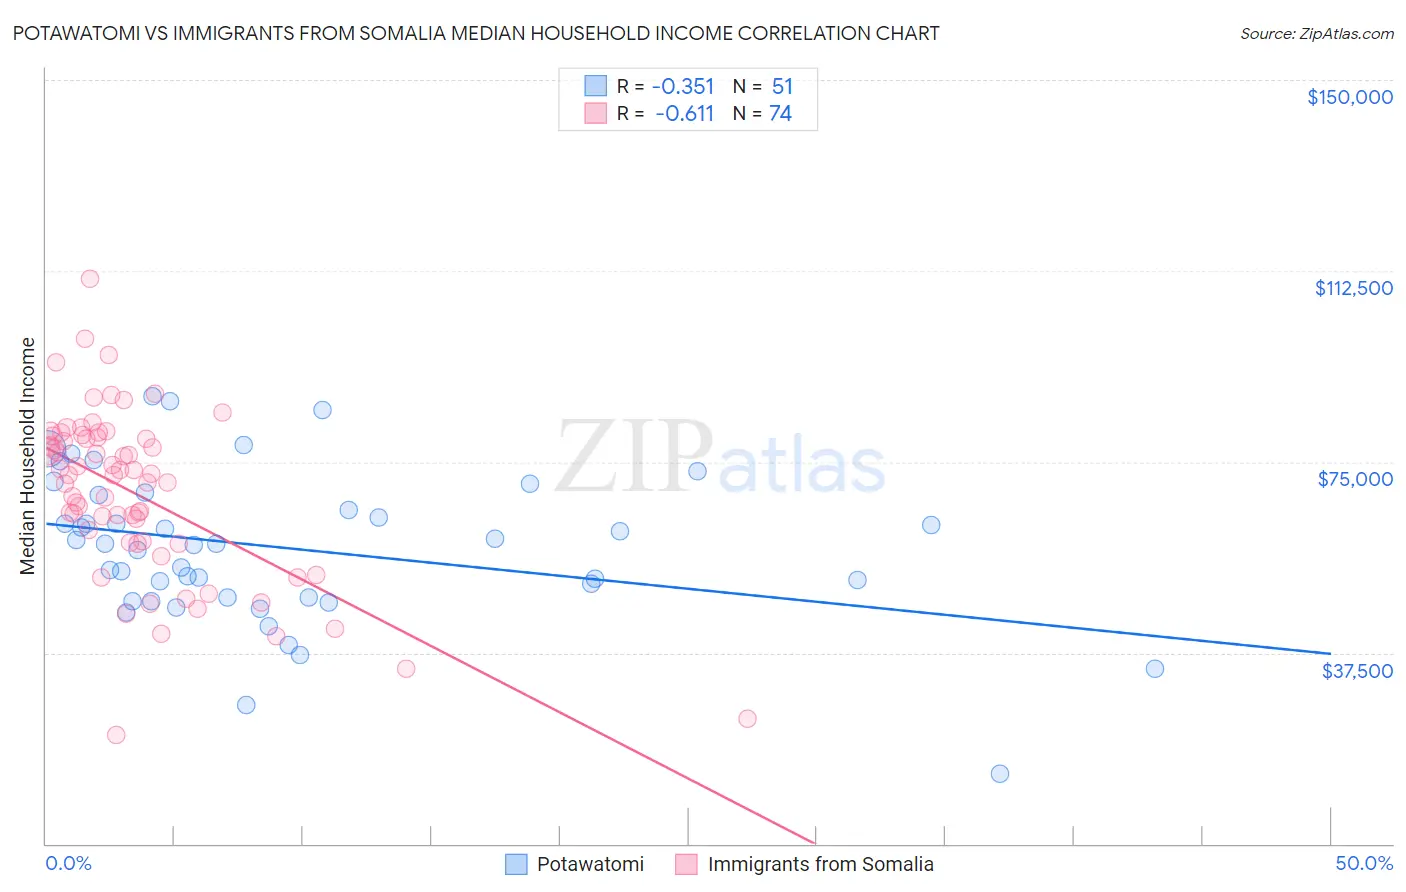 Potawatomi vs Immigrants from Somalia Median Household Income